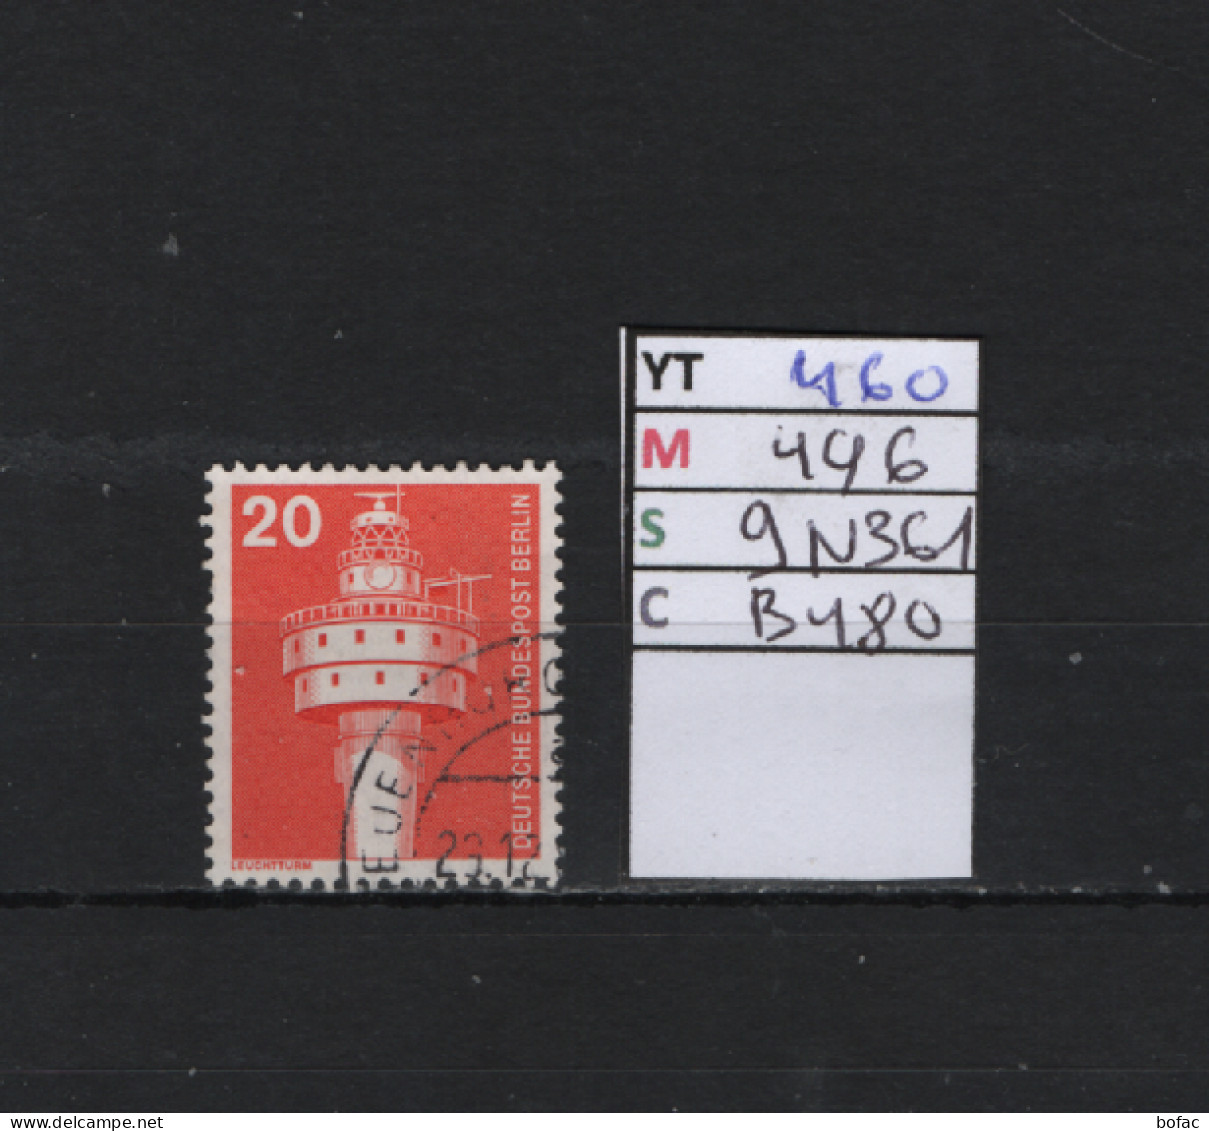 P. FIXE Obl 460 YT 496 MIC 9N361 SCO B481 GIB Phare Industrie Et Technique 1975 1976 *Berlin* 75/03 - Used Stamps